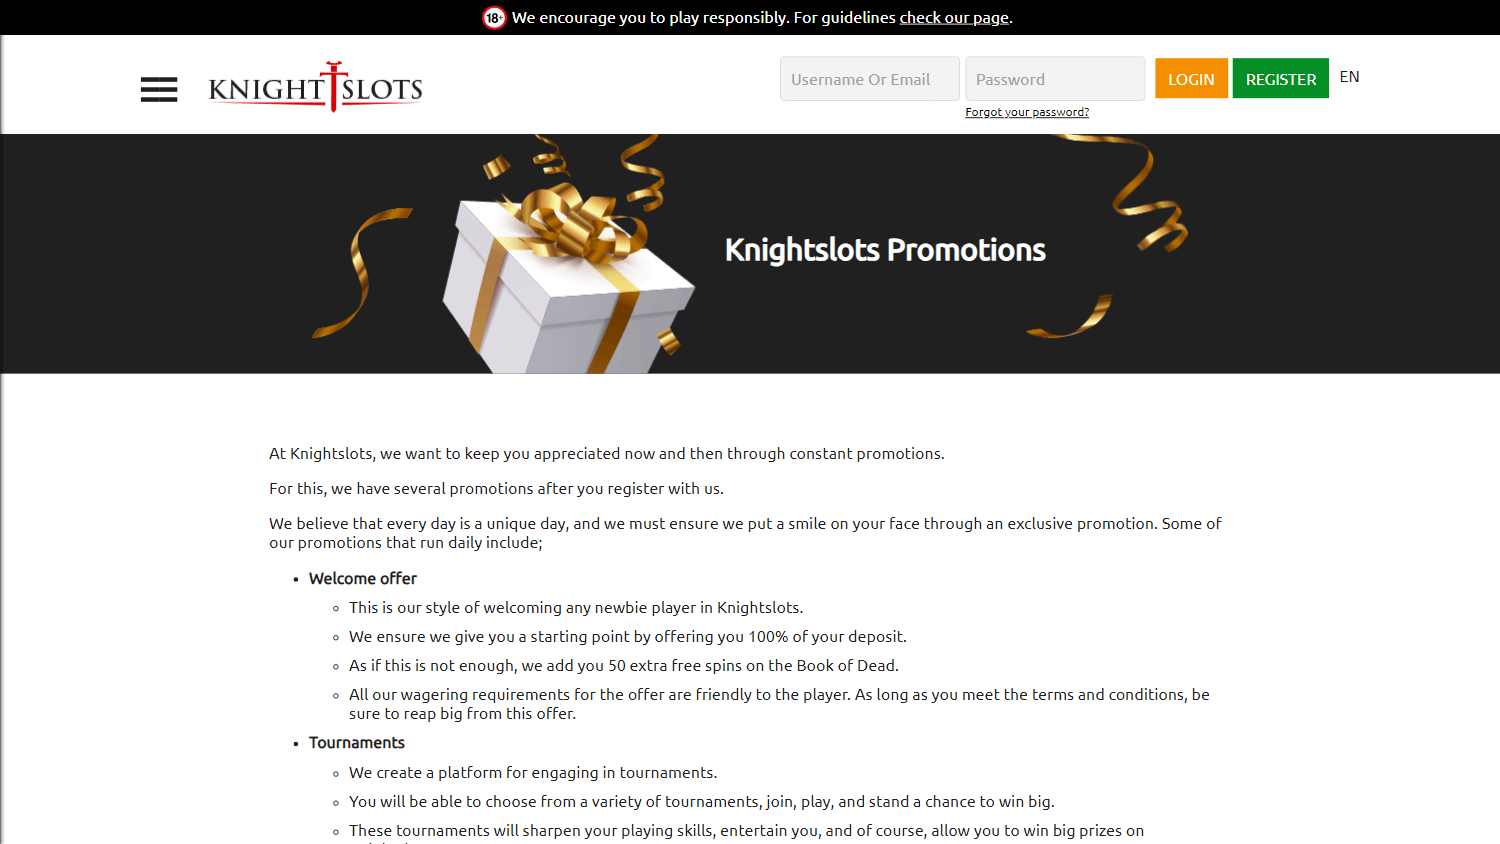 knightslots_casino_promotions_desktop